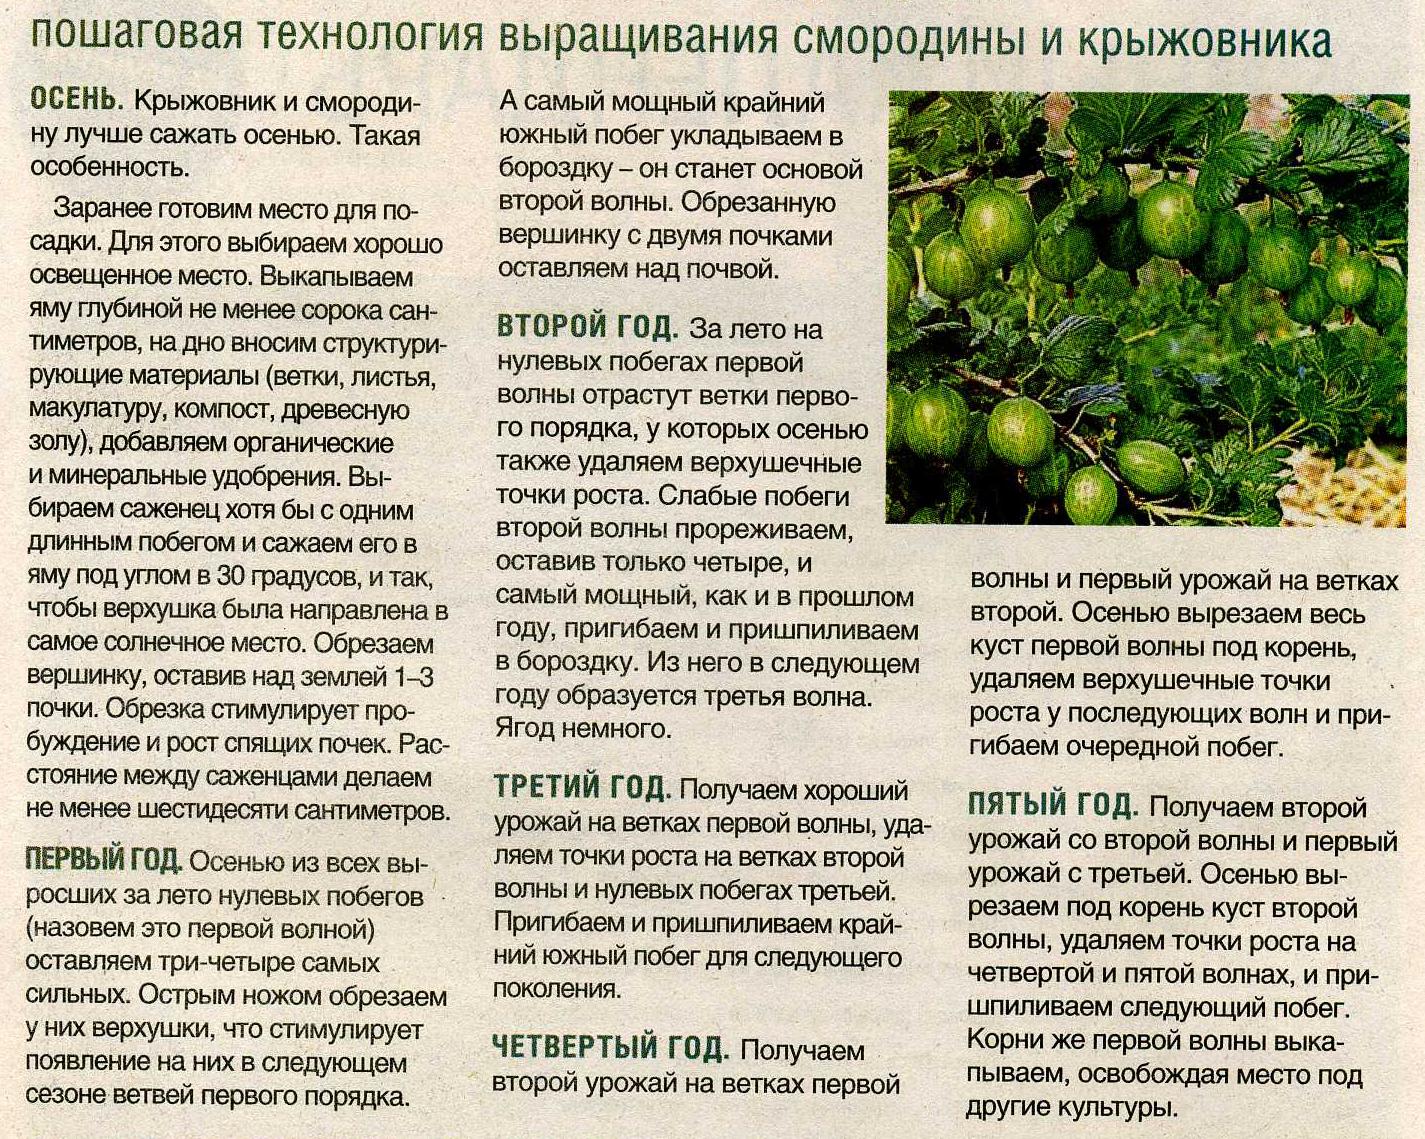 Чёрная смородина пигмей – один из лучших сортов на российском рынке